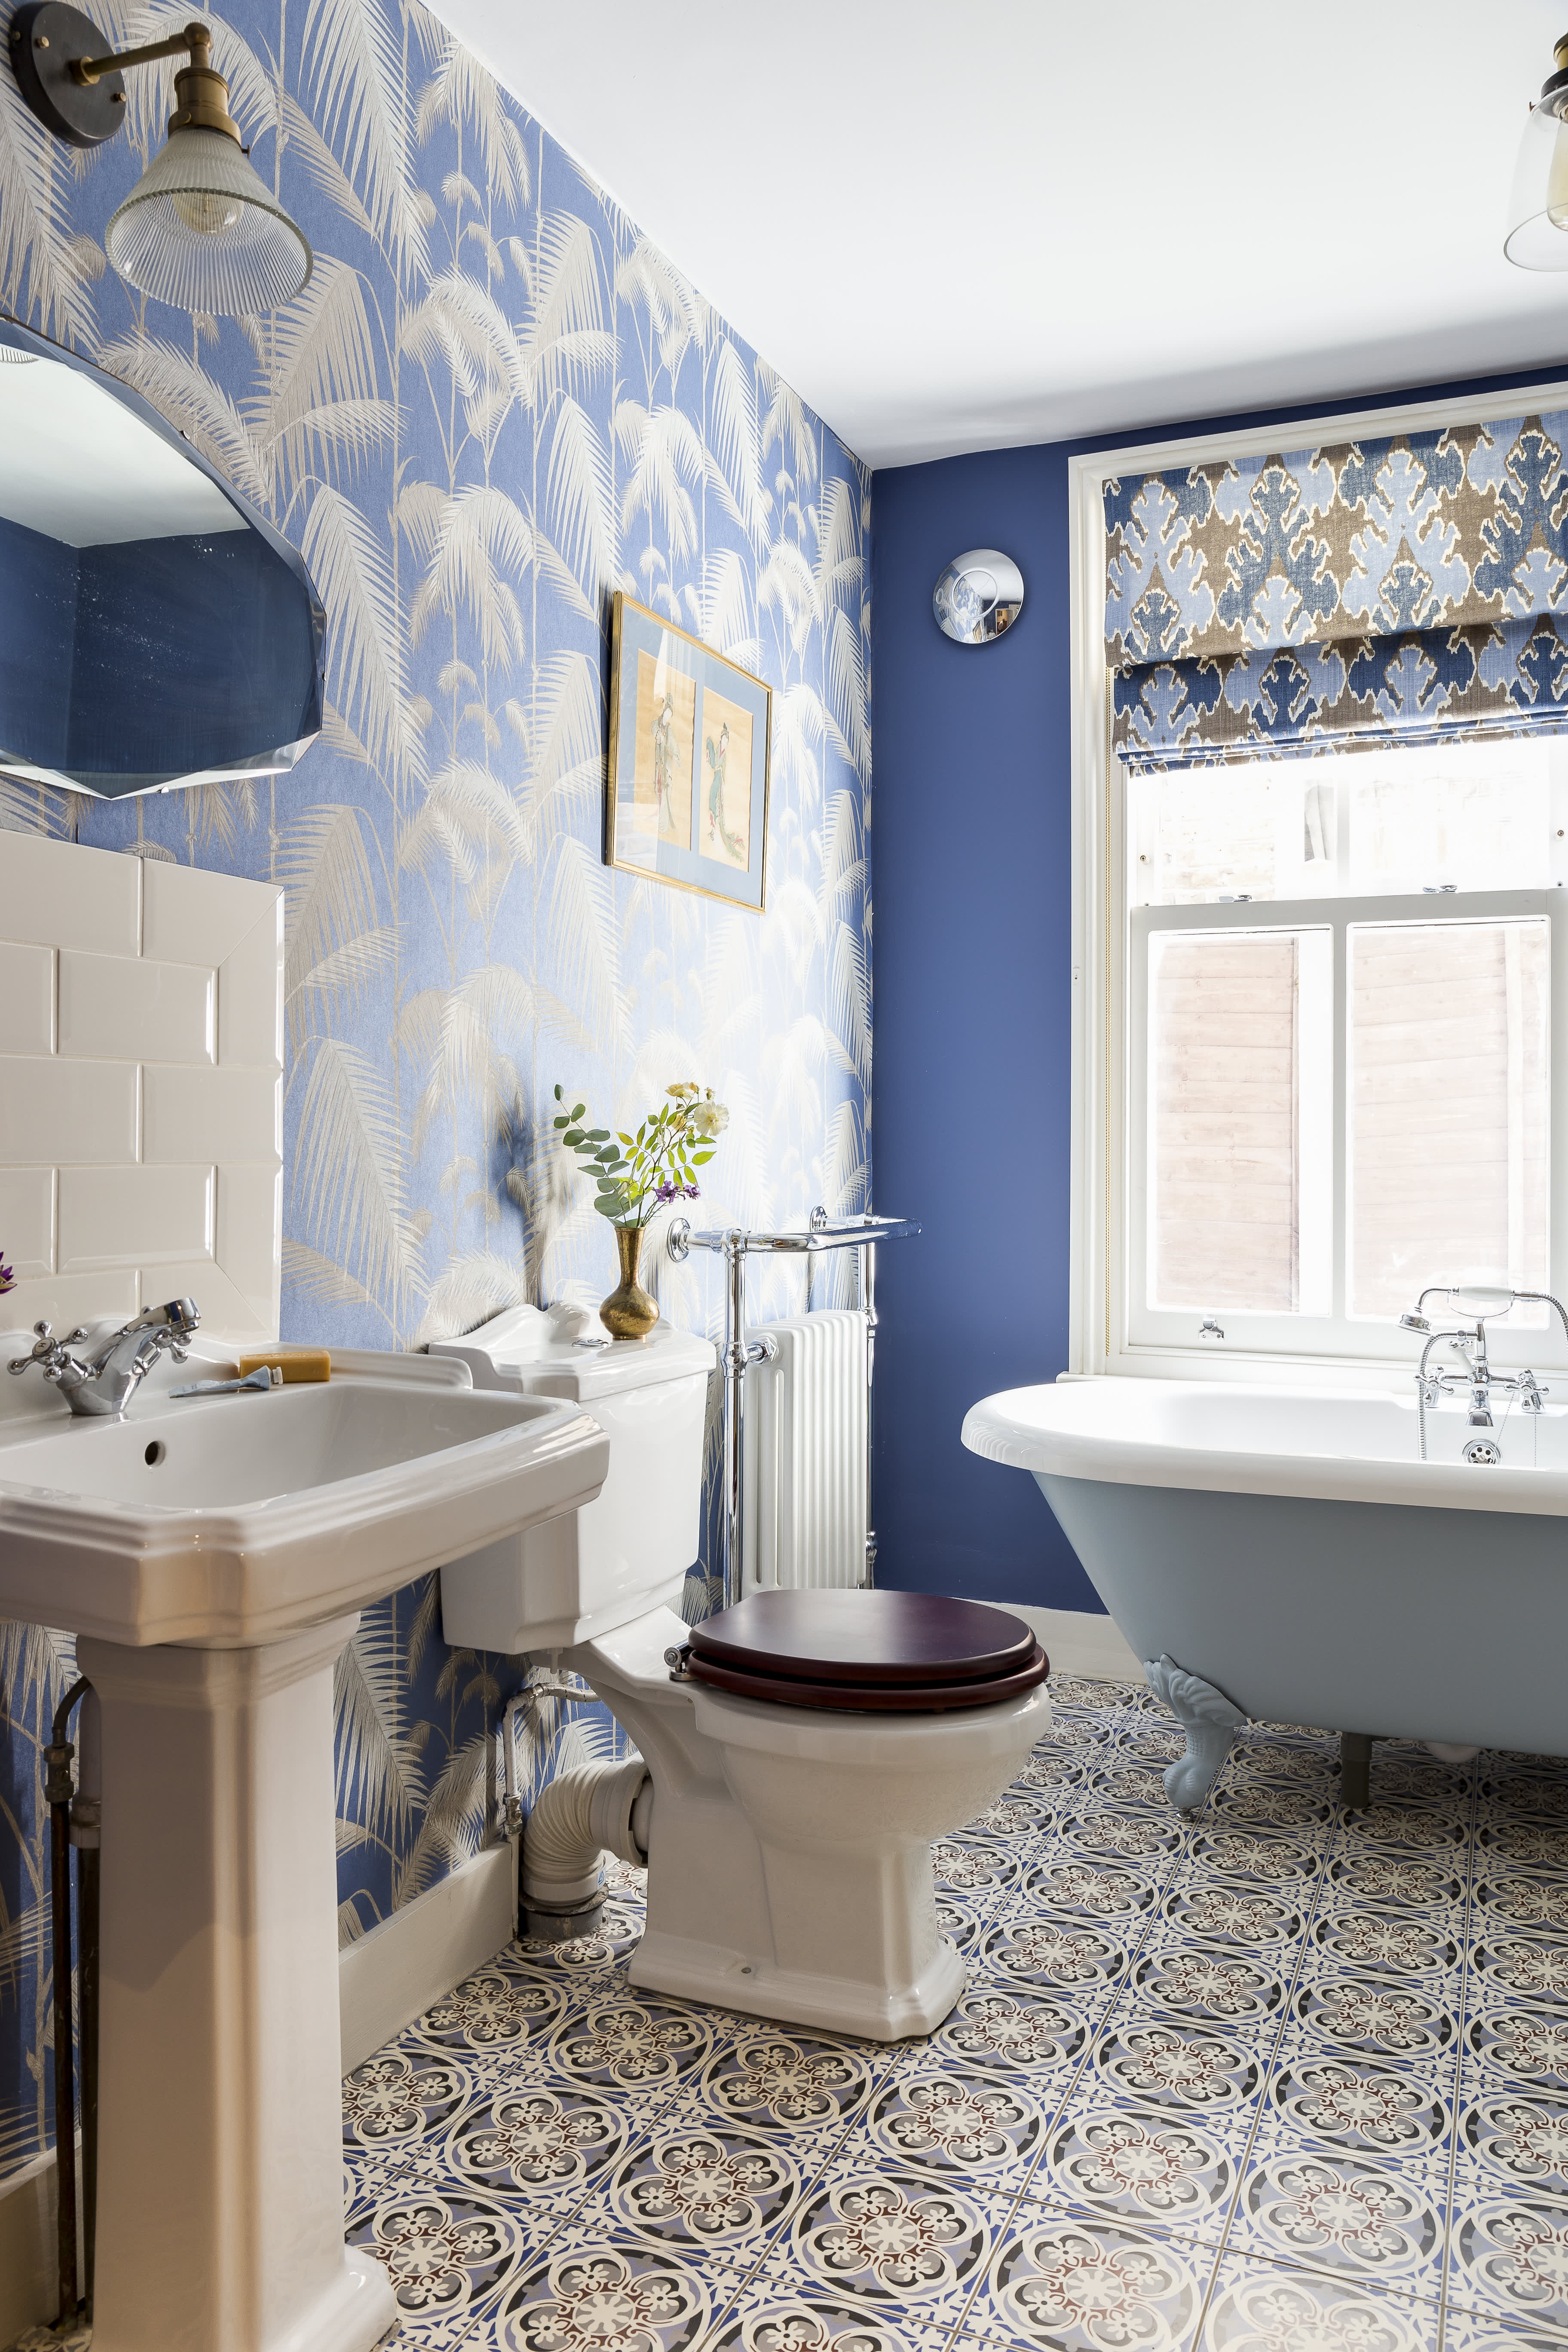 Ванная комната в голубом цвете